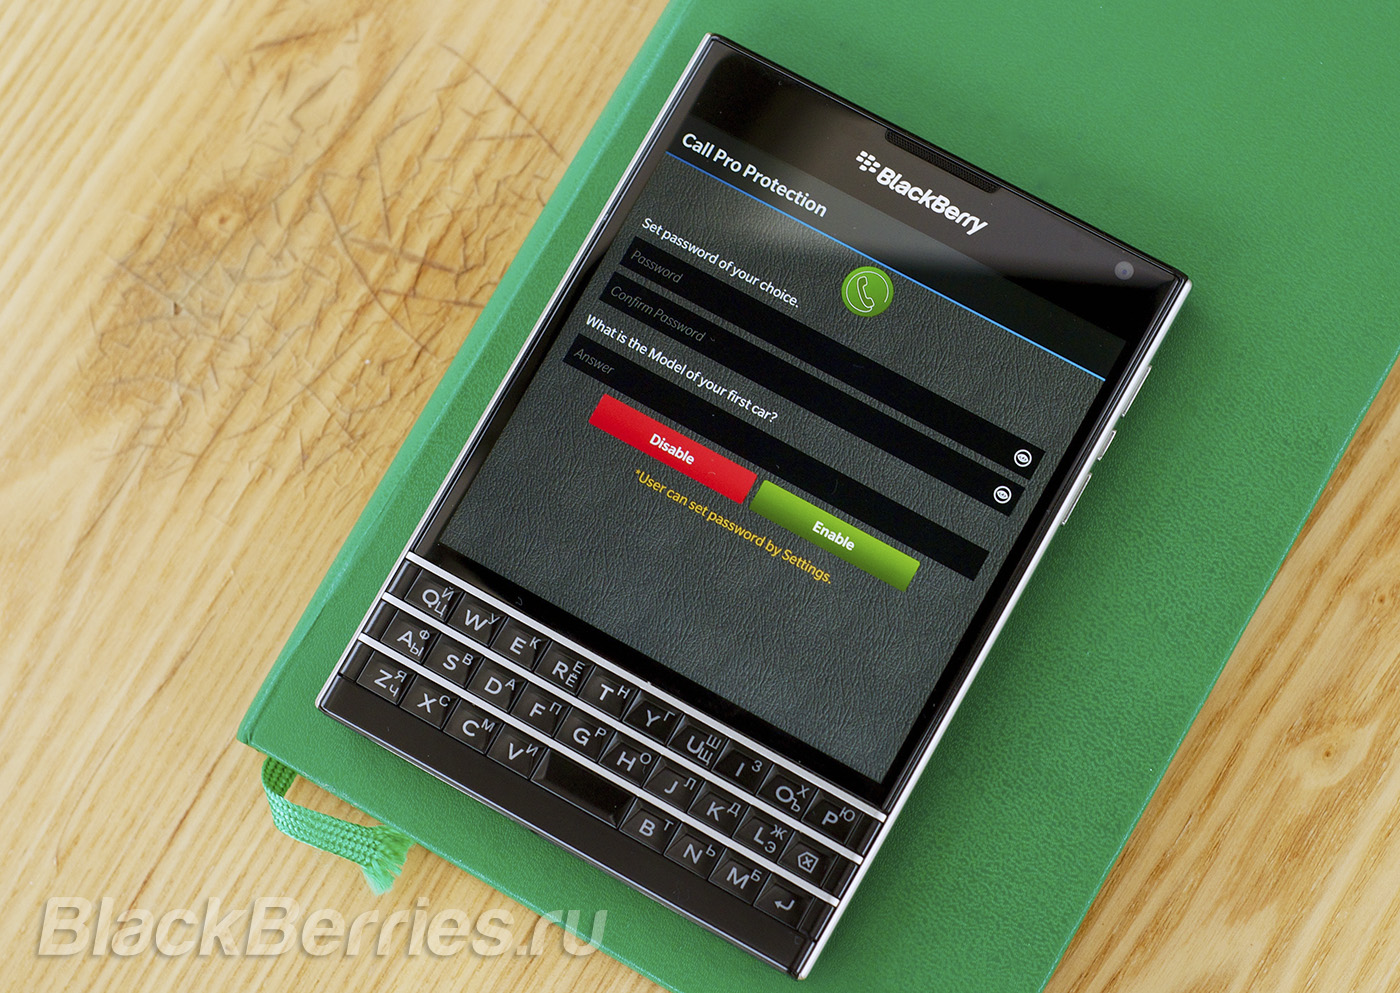 BlackBerry-Passport-Apps-2-10